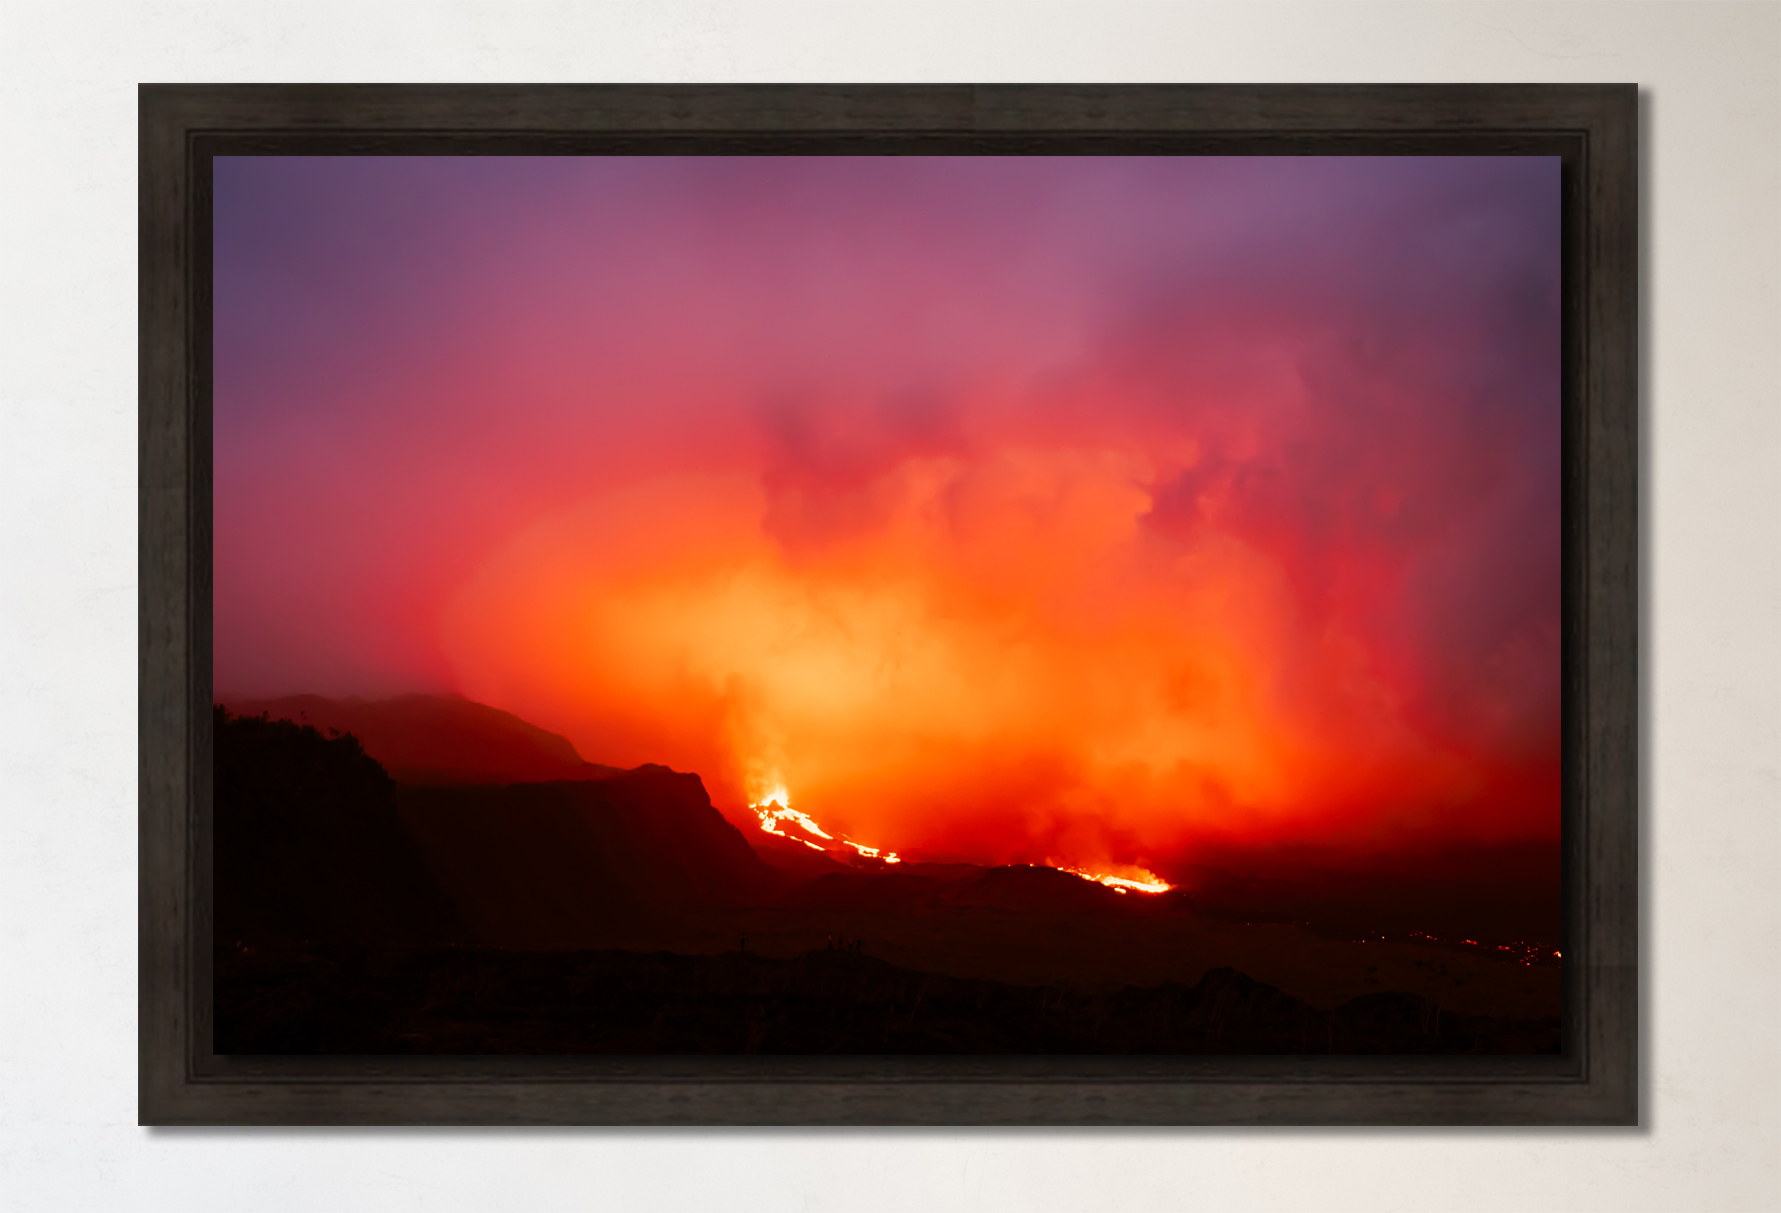 Tableau photo île de La Réunion - Piton de La Fournaise © Brieuc Coessens - TAB (9)